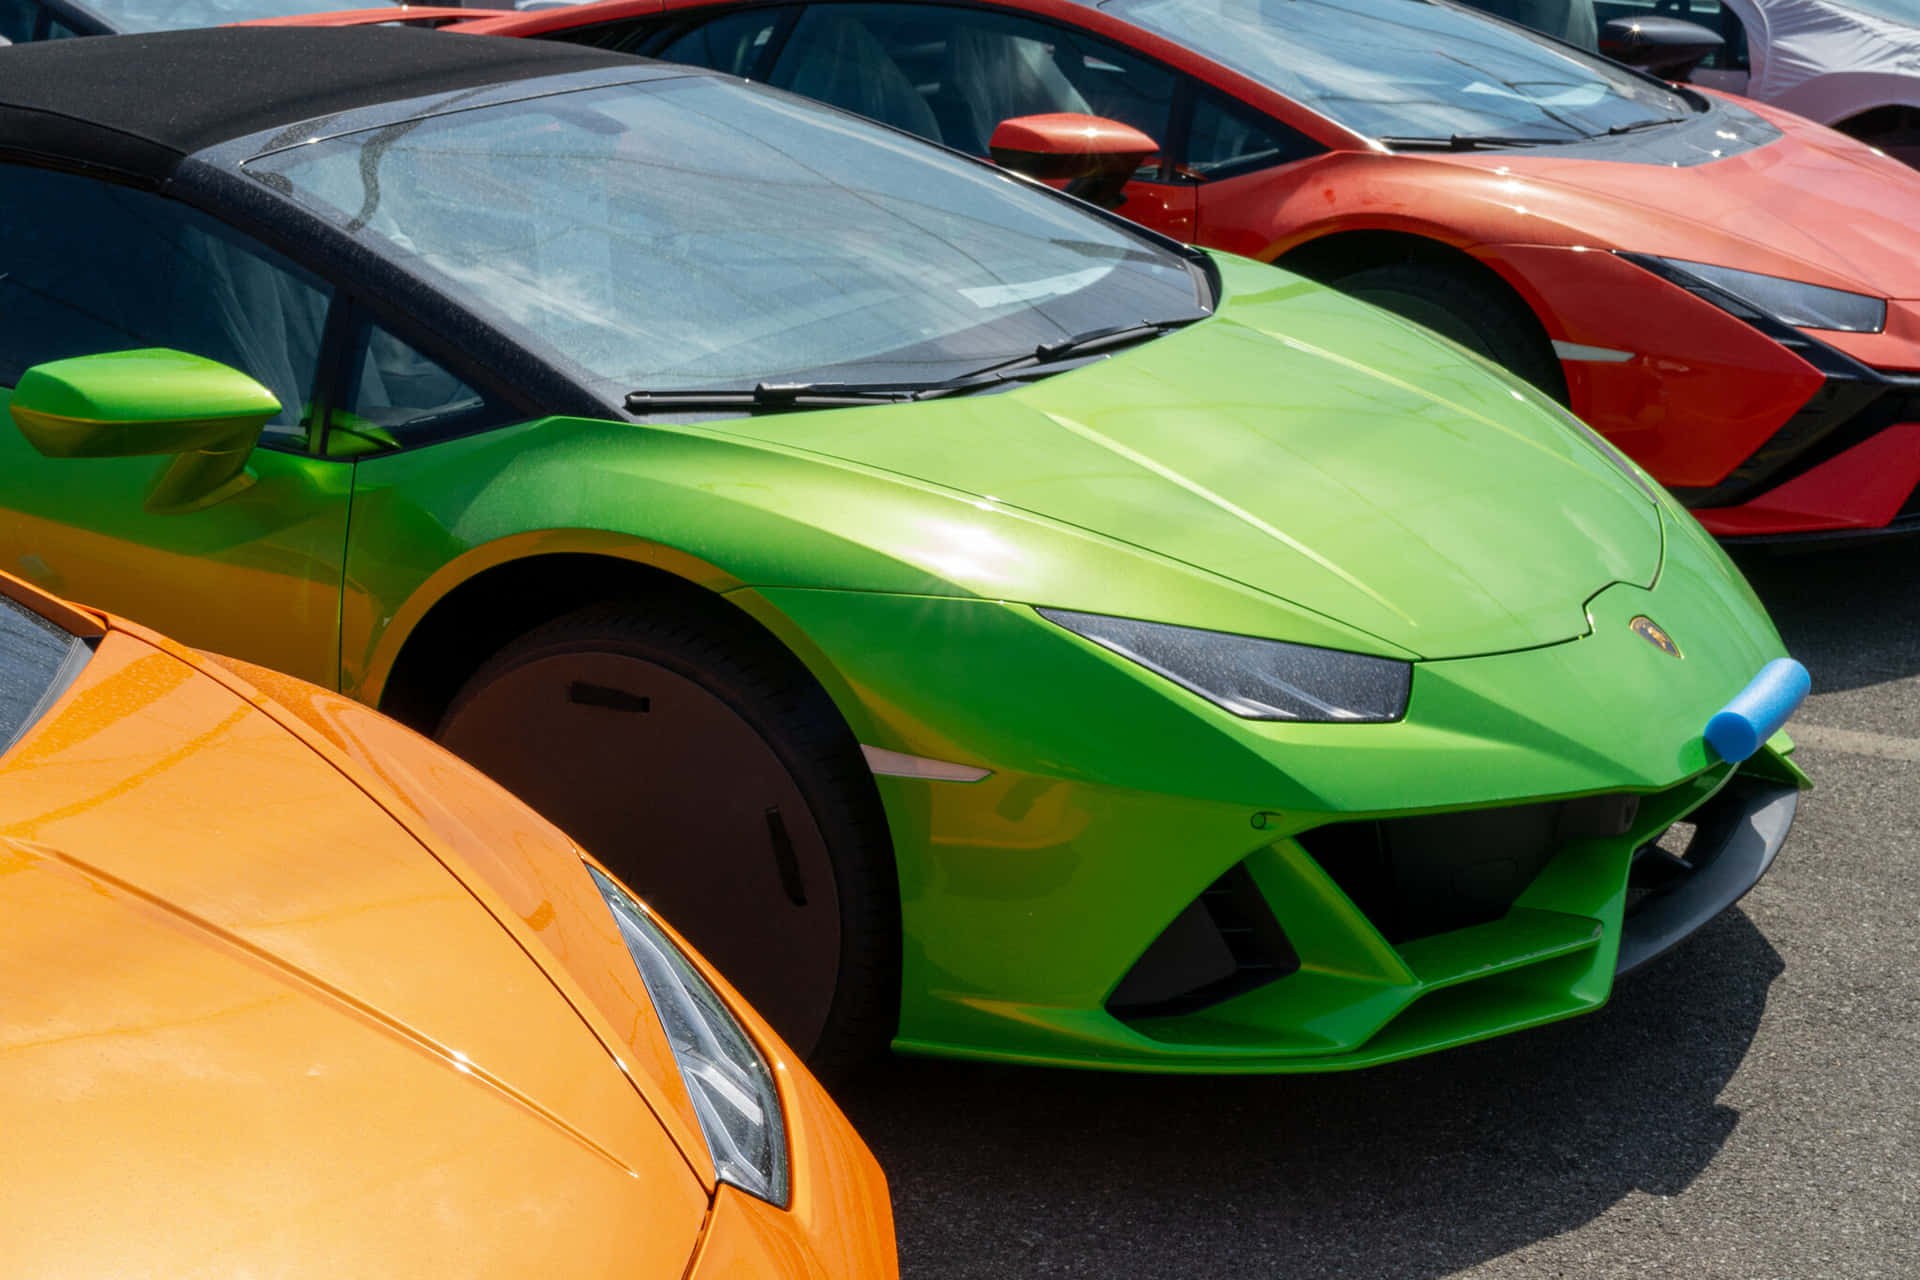 En række farverige sportsbiler parkeret på en parkeringsplads